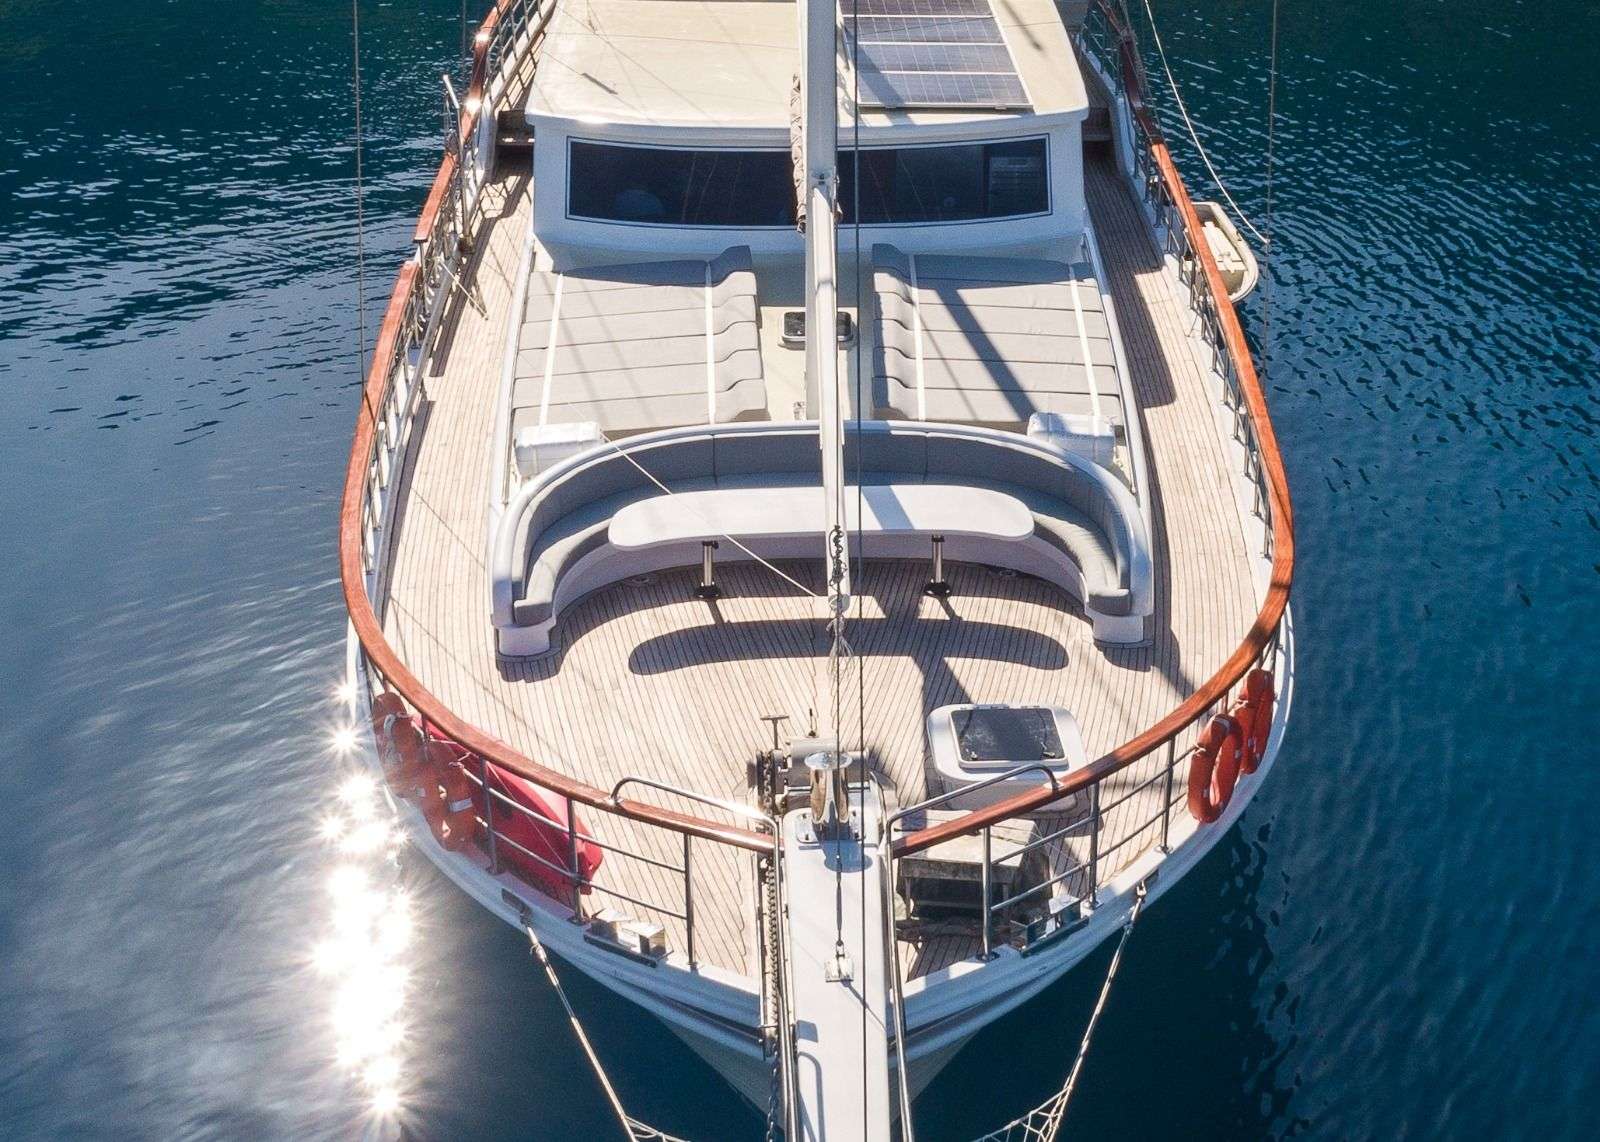 koray ege - Yacht Charter Mykonos & Boat hire in Greece & Turkey 6